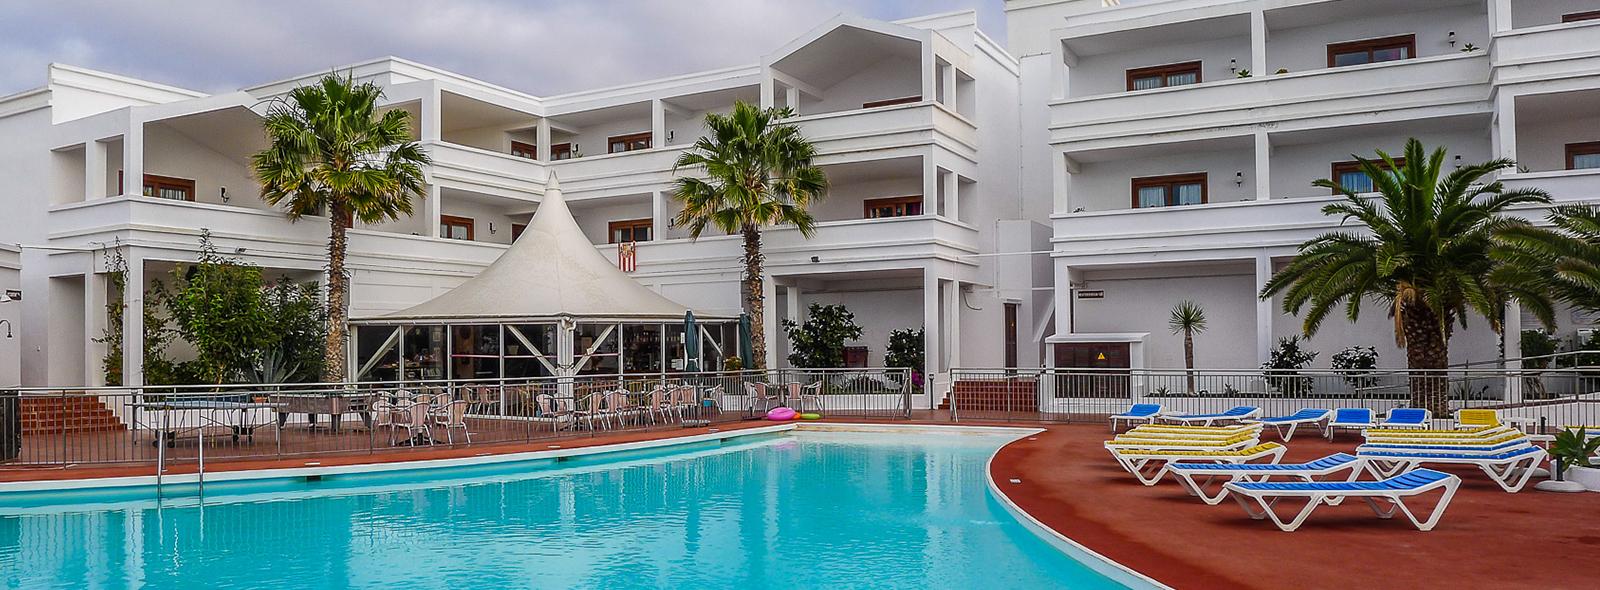 Reposez-vous-à-hotel-Oceano-durant-votre-séjour-Lanzarote-banniere